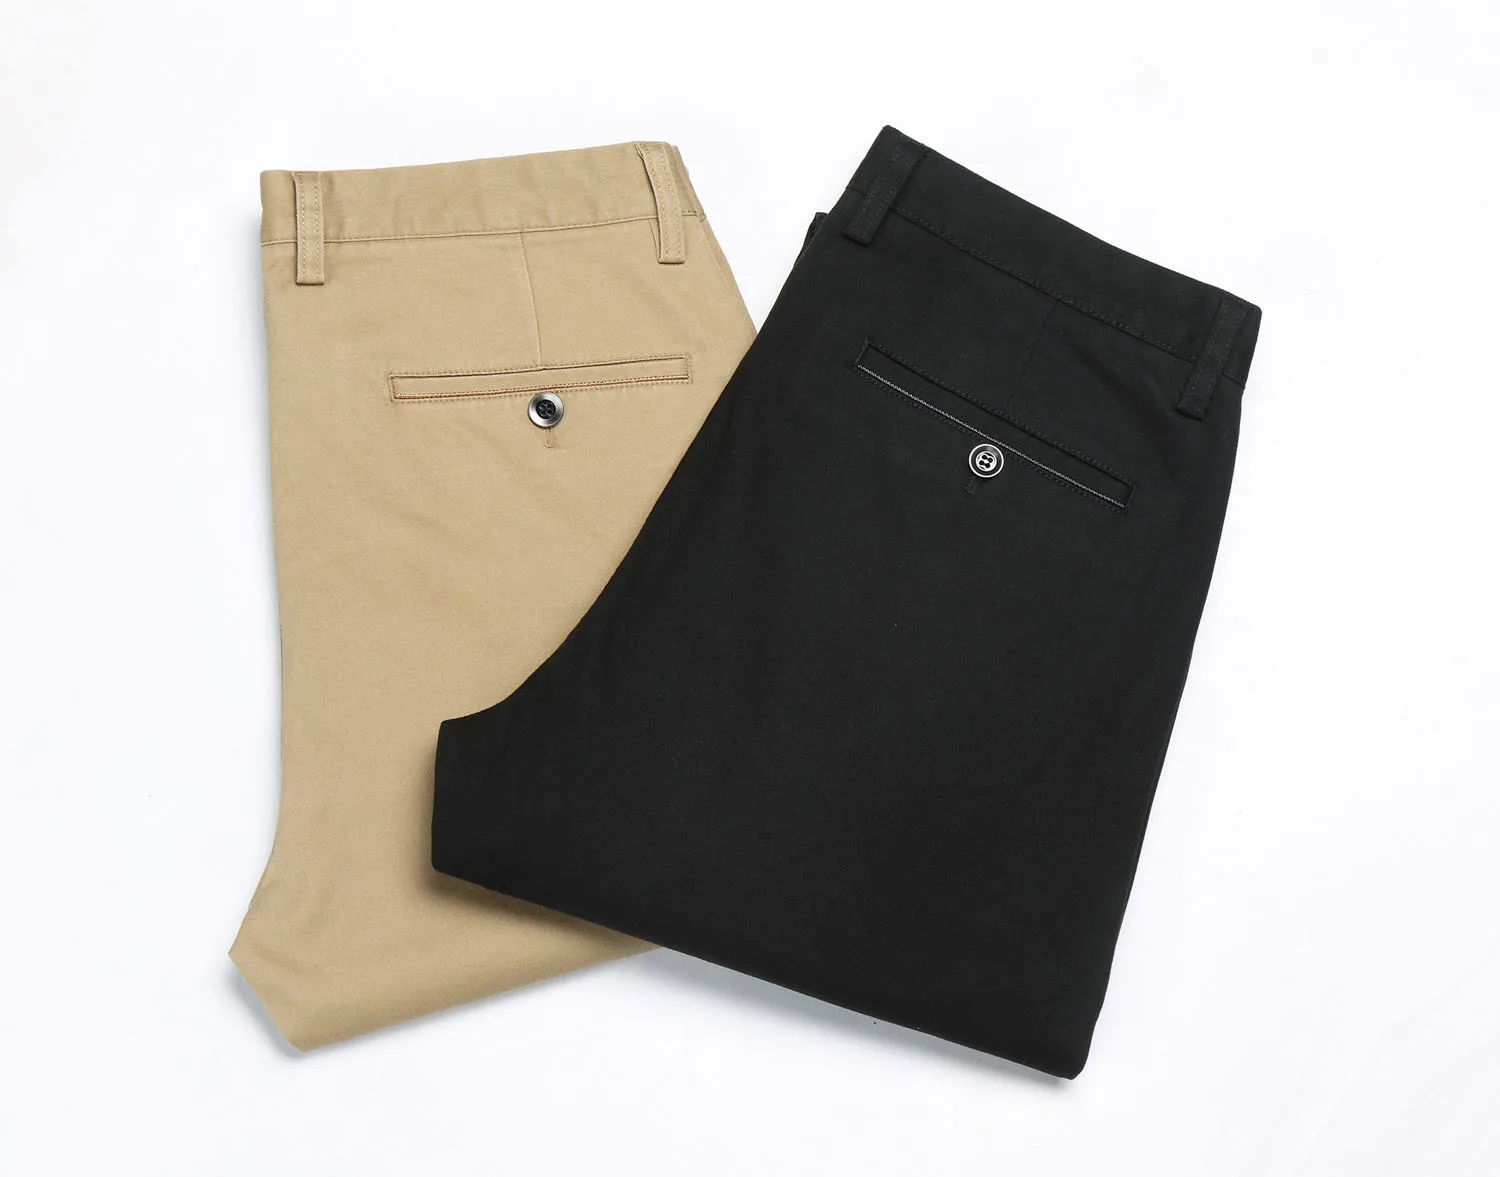 DAISHU хлопковые повседневные мужские брюки микро-эластичные узкие прямые брюки осенние классические деловые однотонные хаки черные брюки мужские 28-44